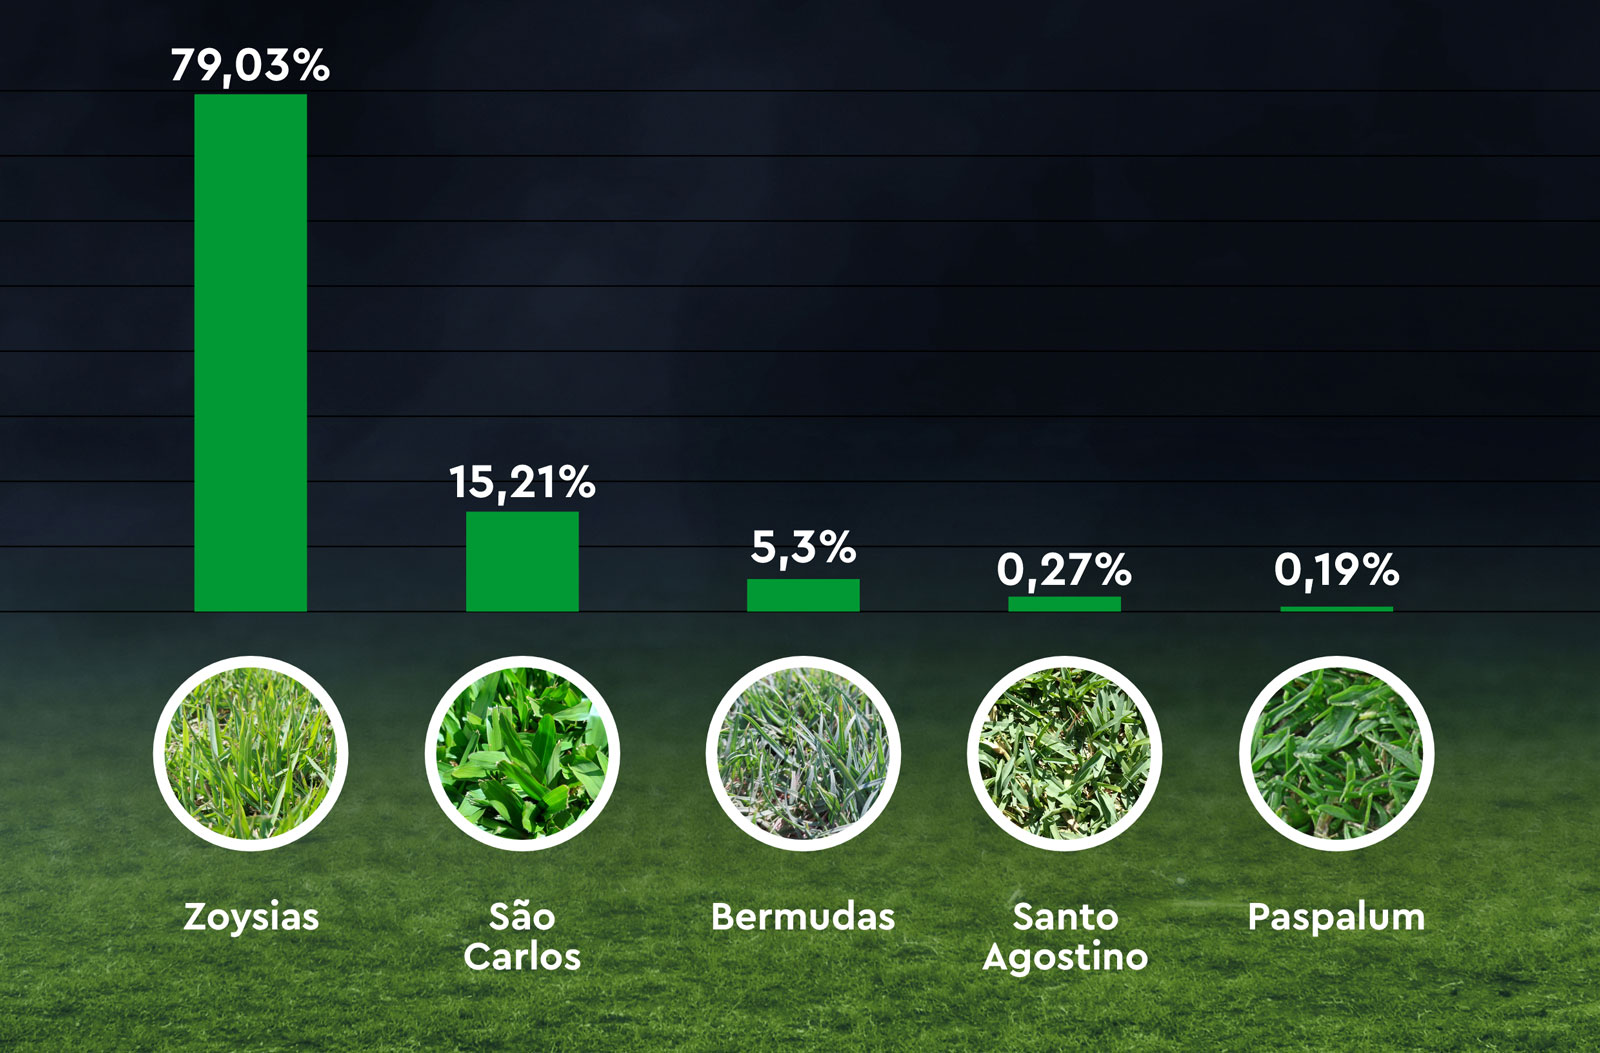 Porcentagem das gramas produzidas no país